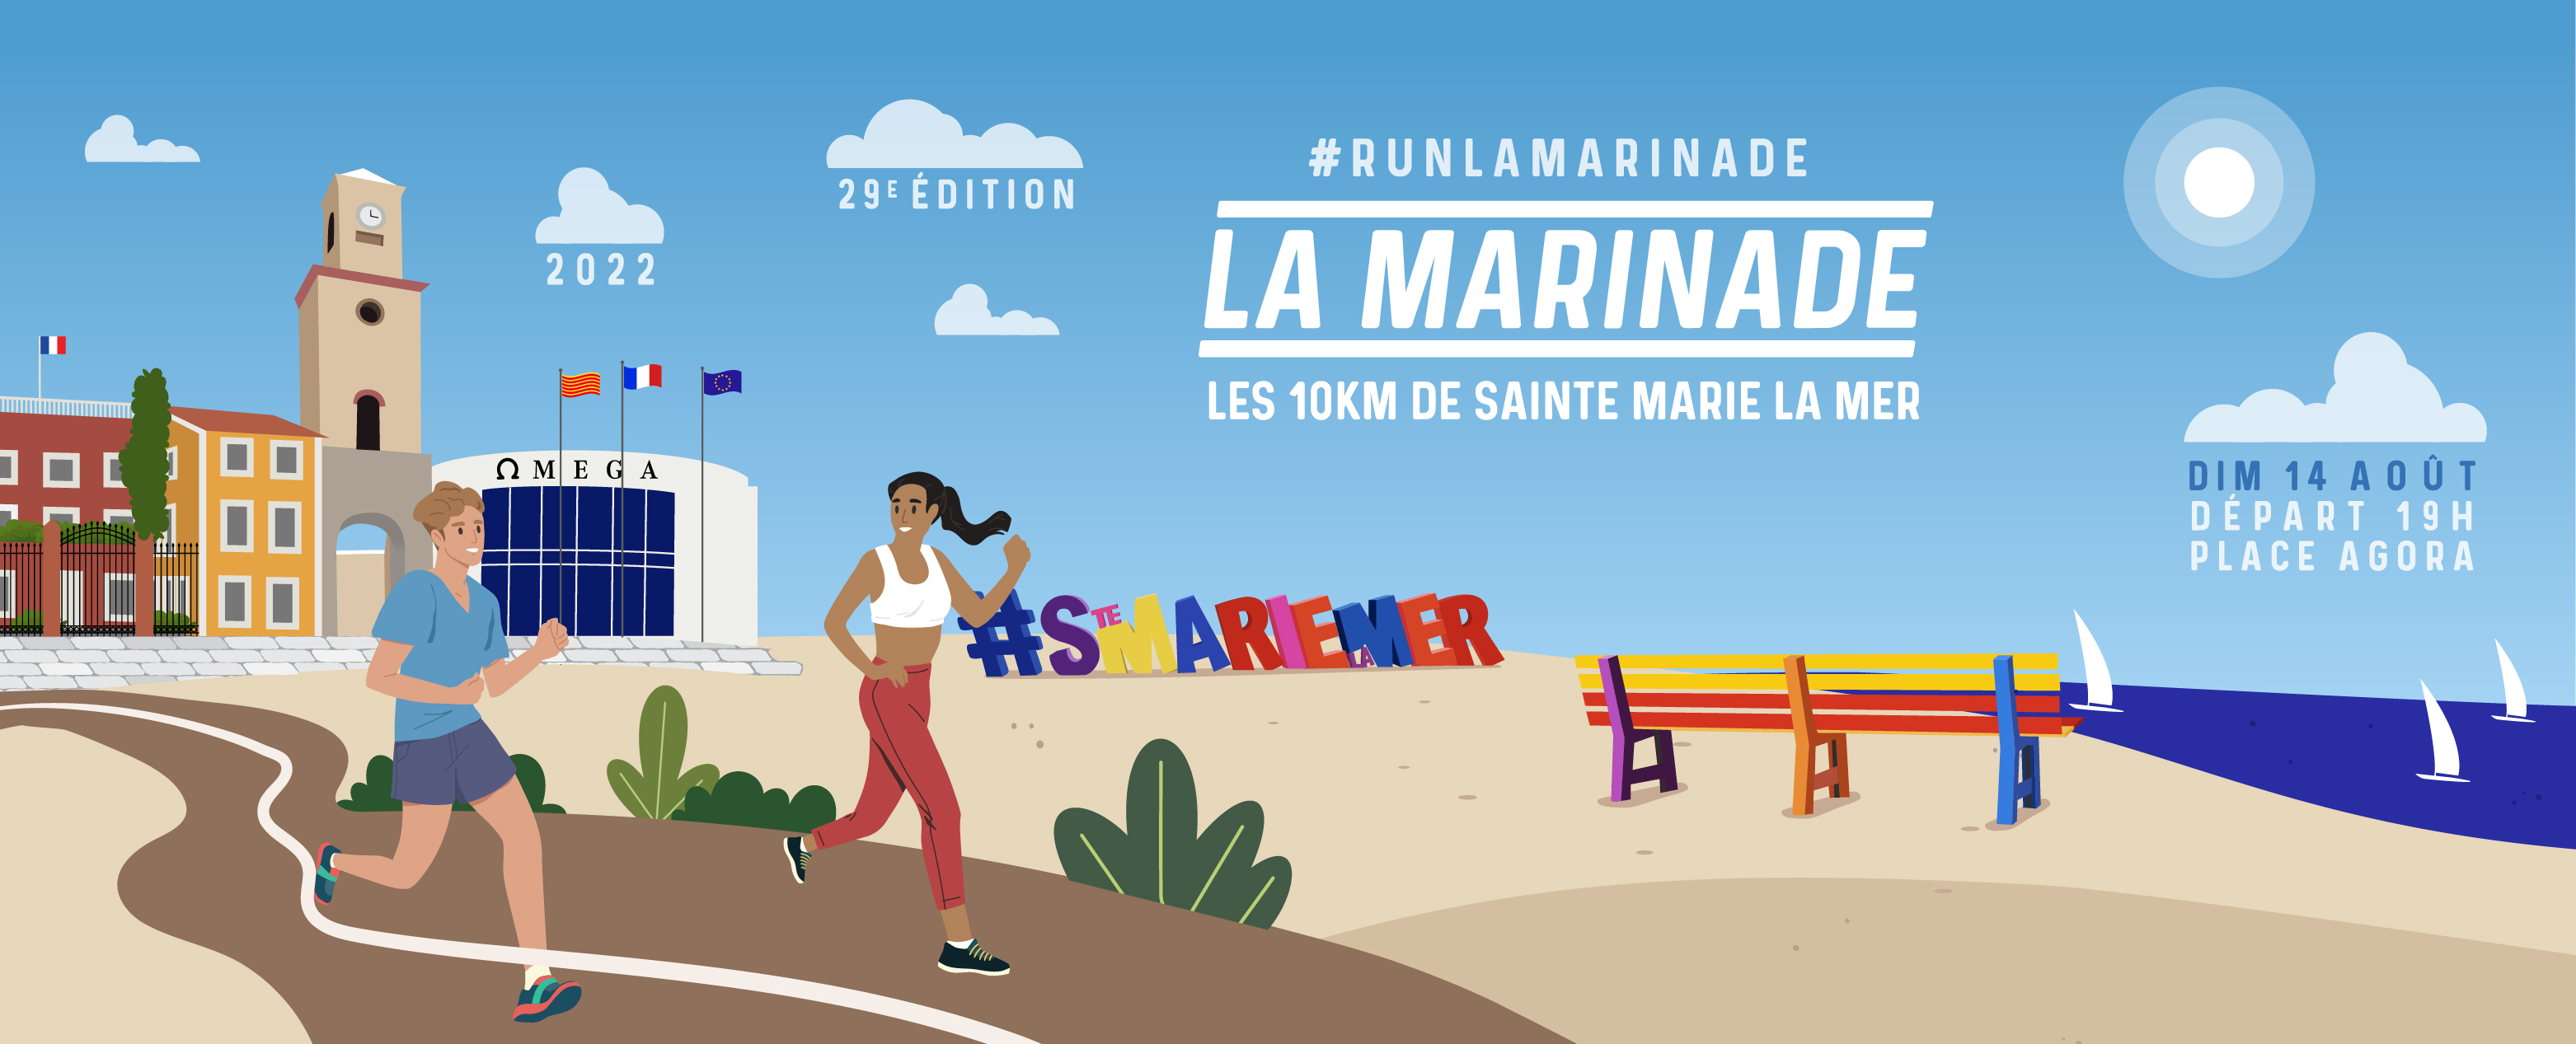 La Marinade - 29° Edition